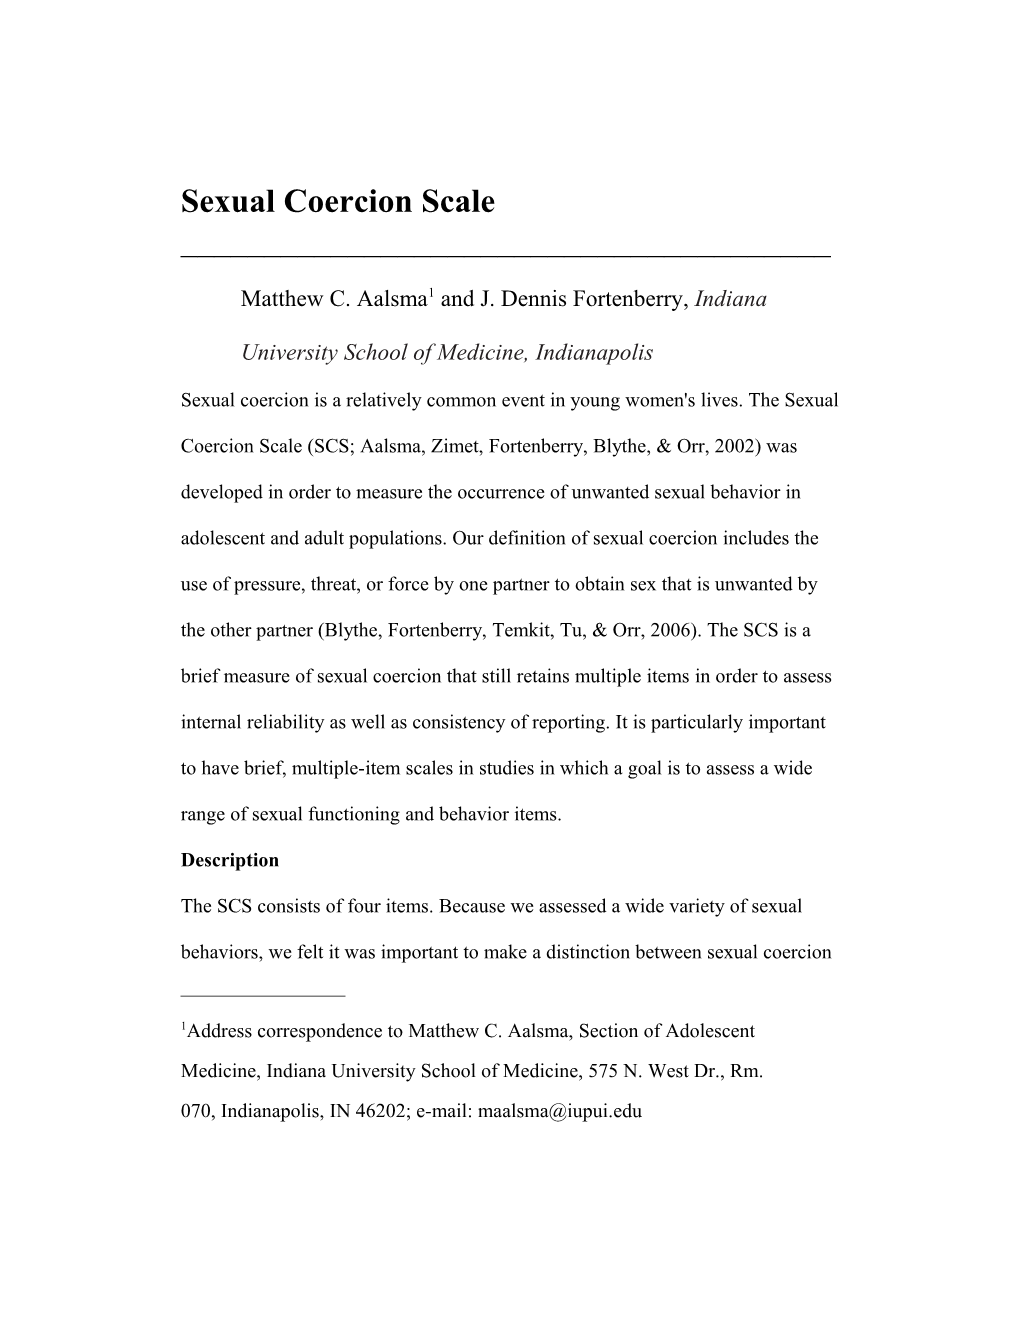 Sexual Attitudes Scale s4